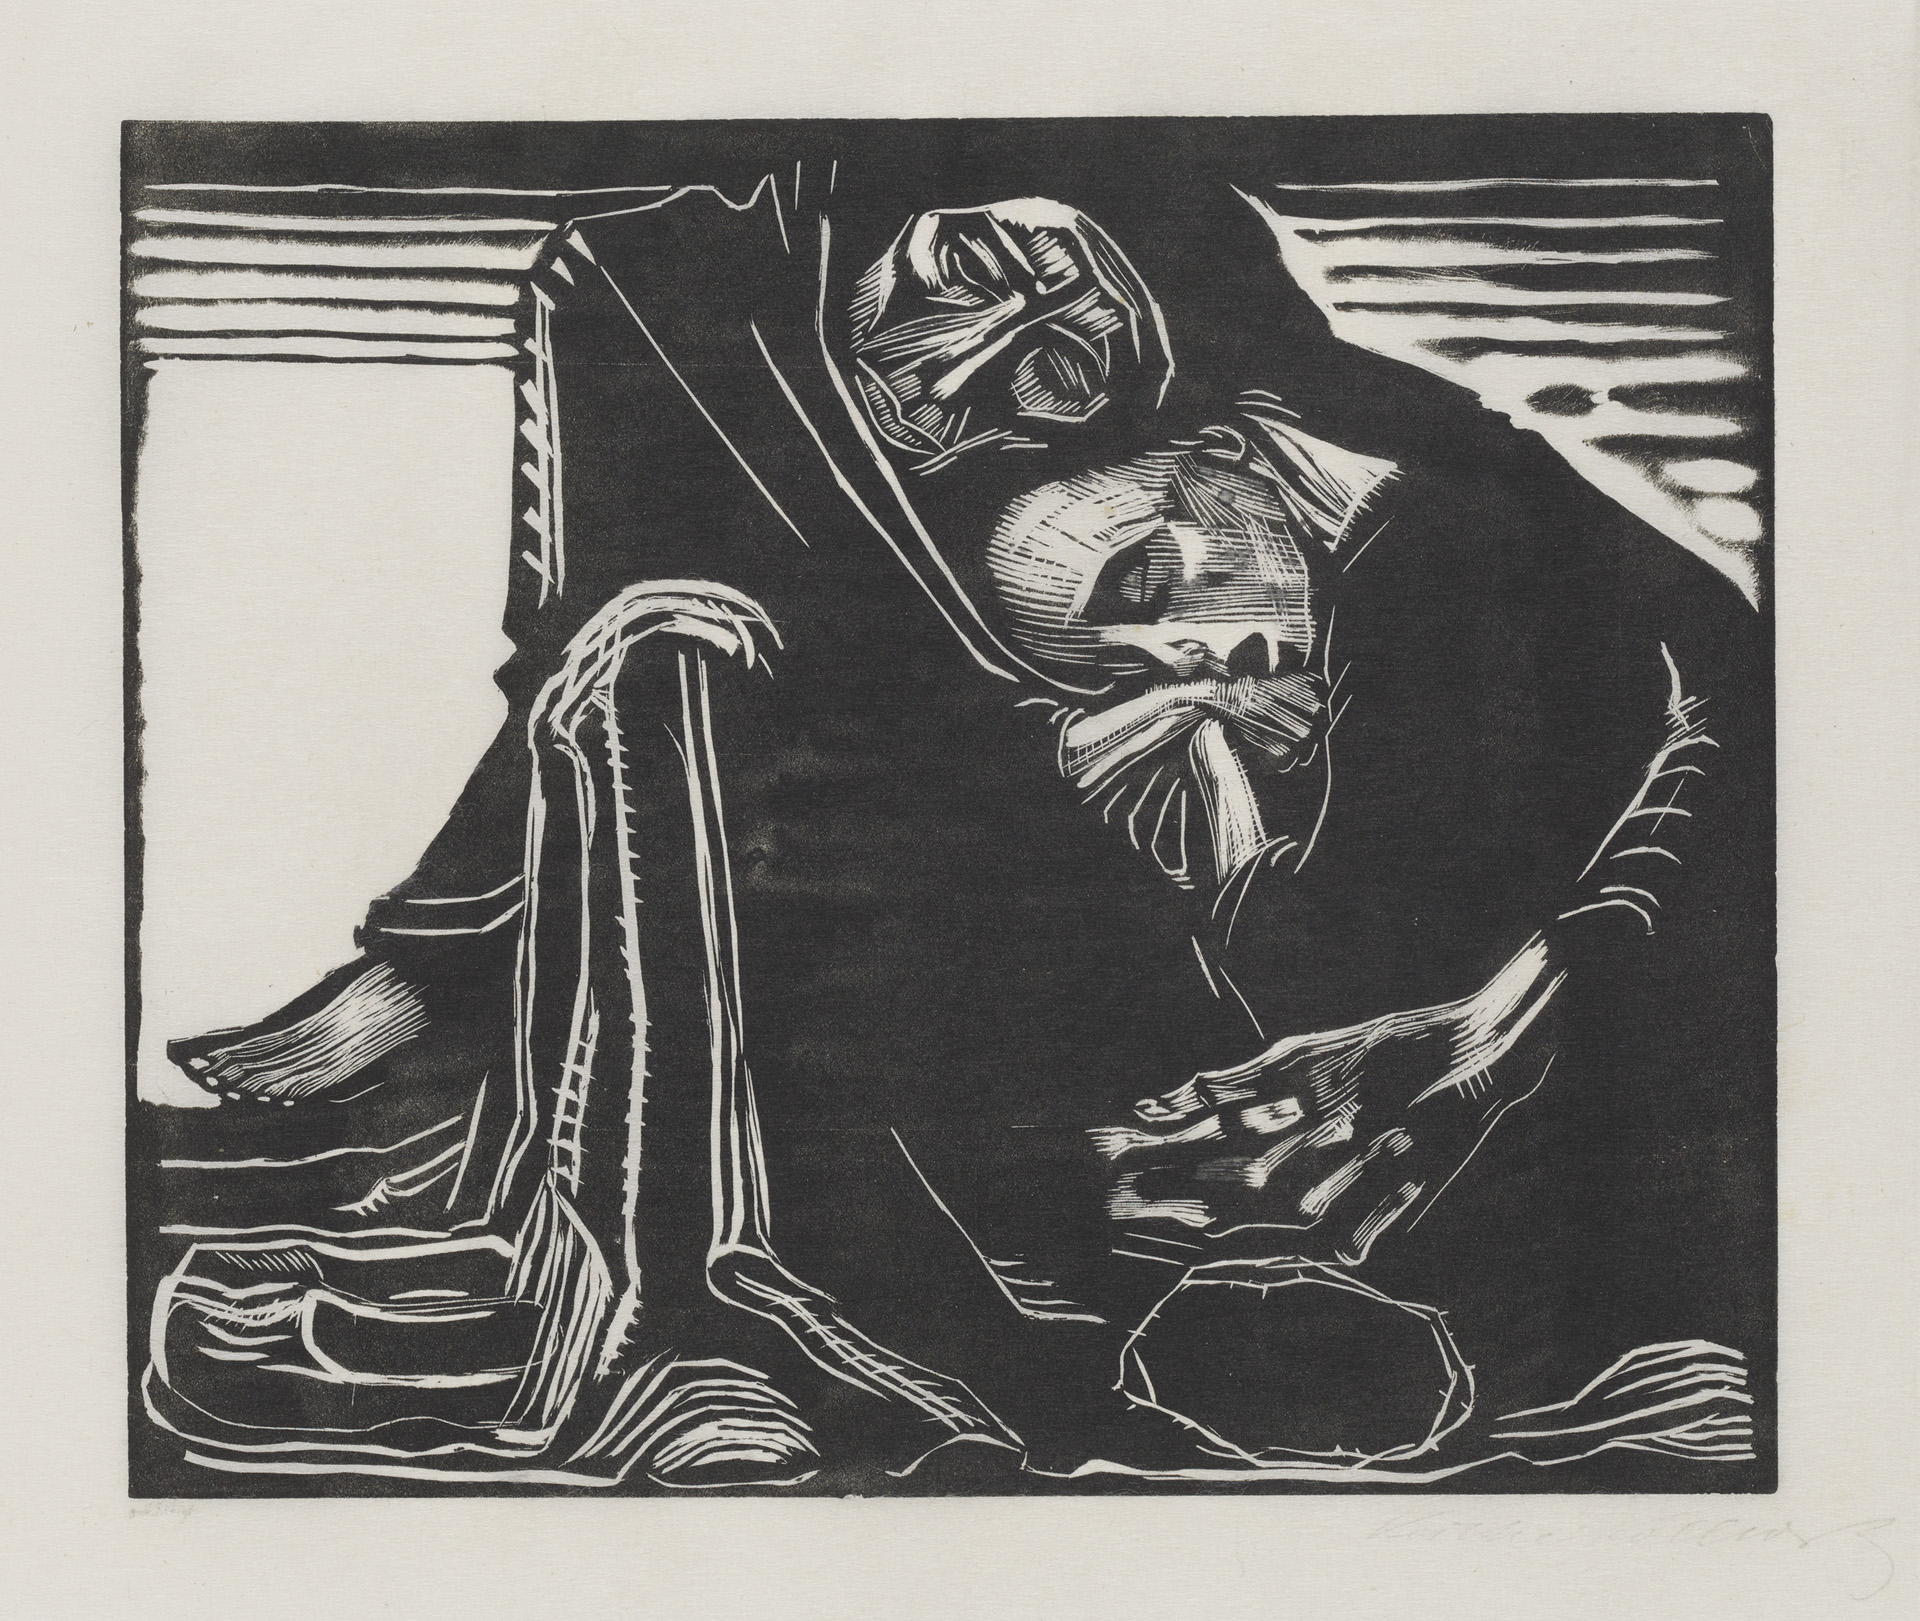 Käthe Kollwitz, La mort avec une femme sur les genoux, 1920/1921, gravure sur bois, Kn 165 VII a, Collection Kollwitz de Cologne © Käthe Kollwitz Museum Köln